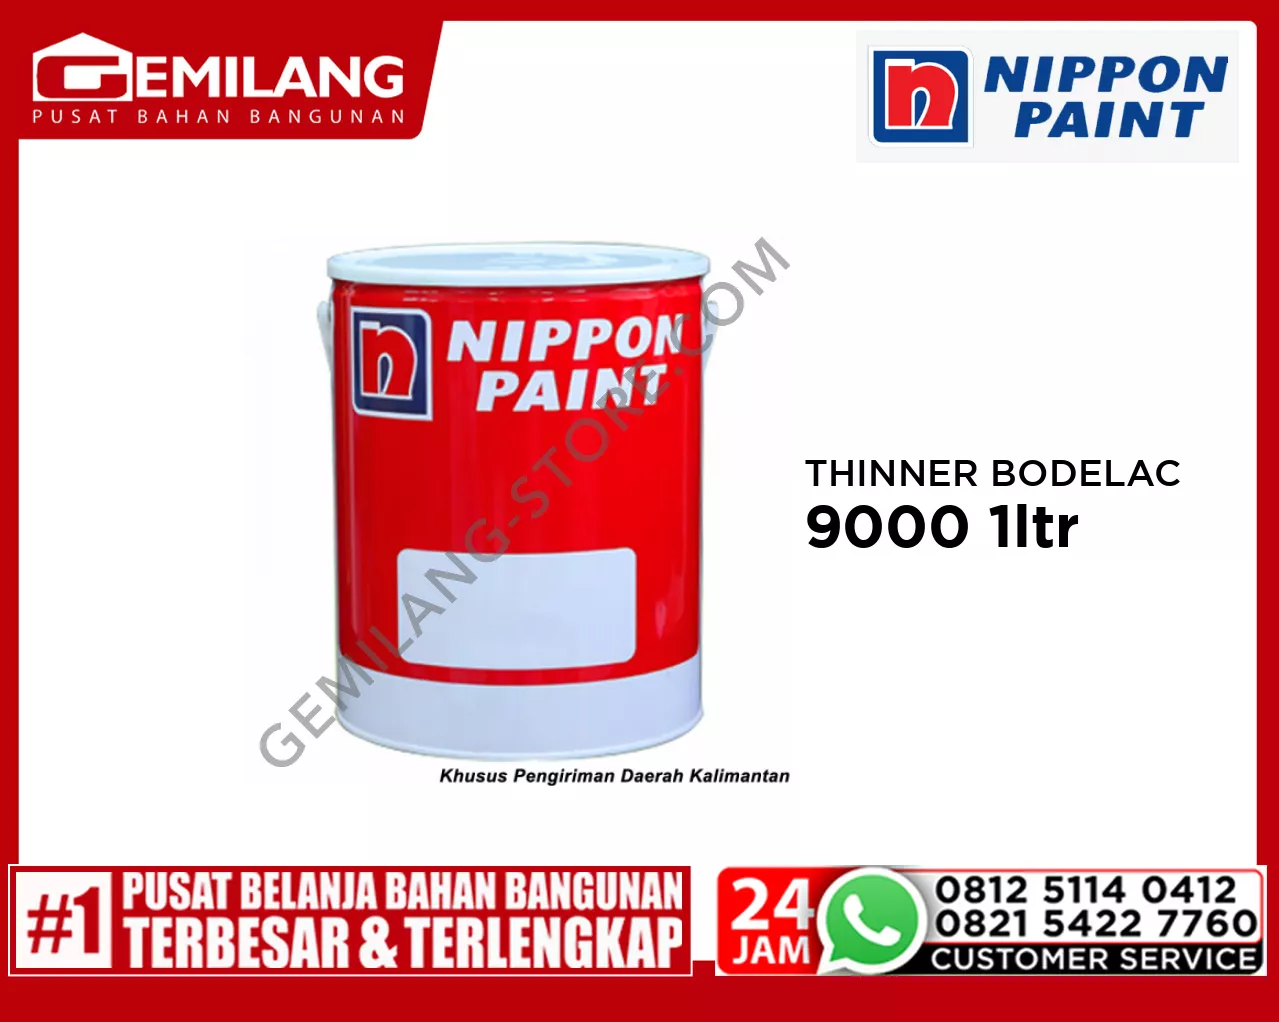 NIPPON THINNER BODELAC 9000 1ltr